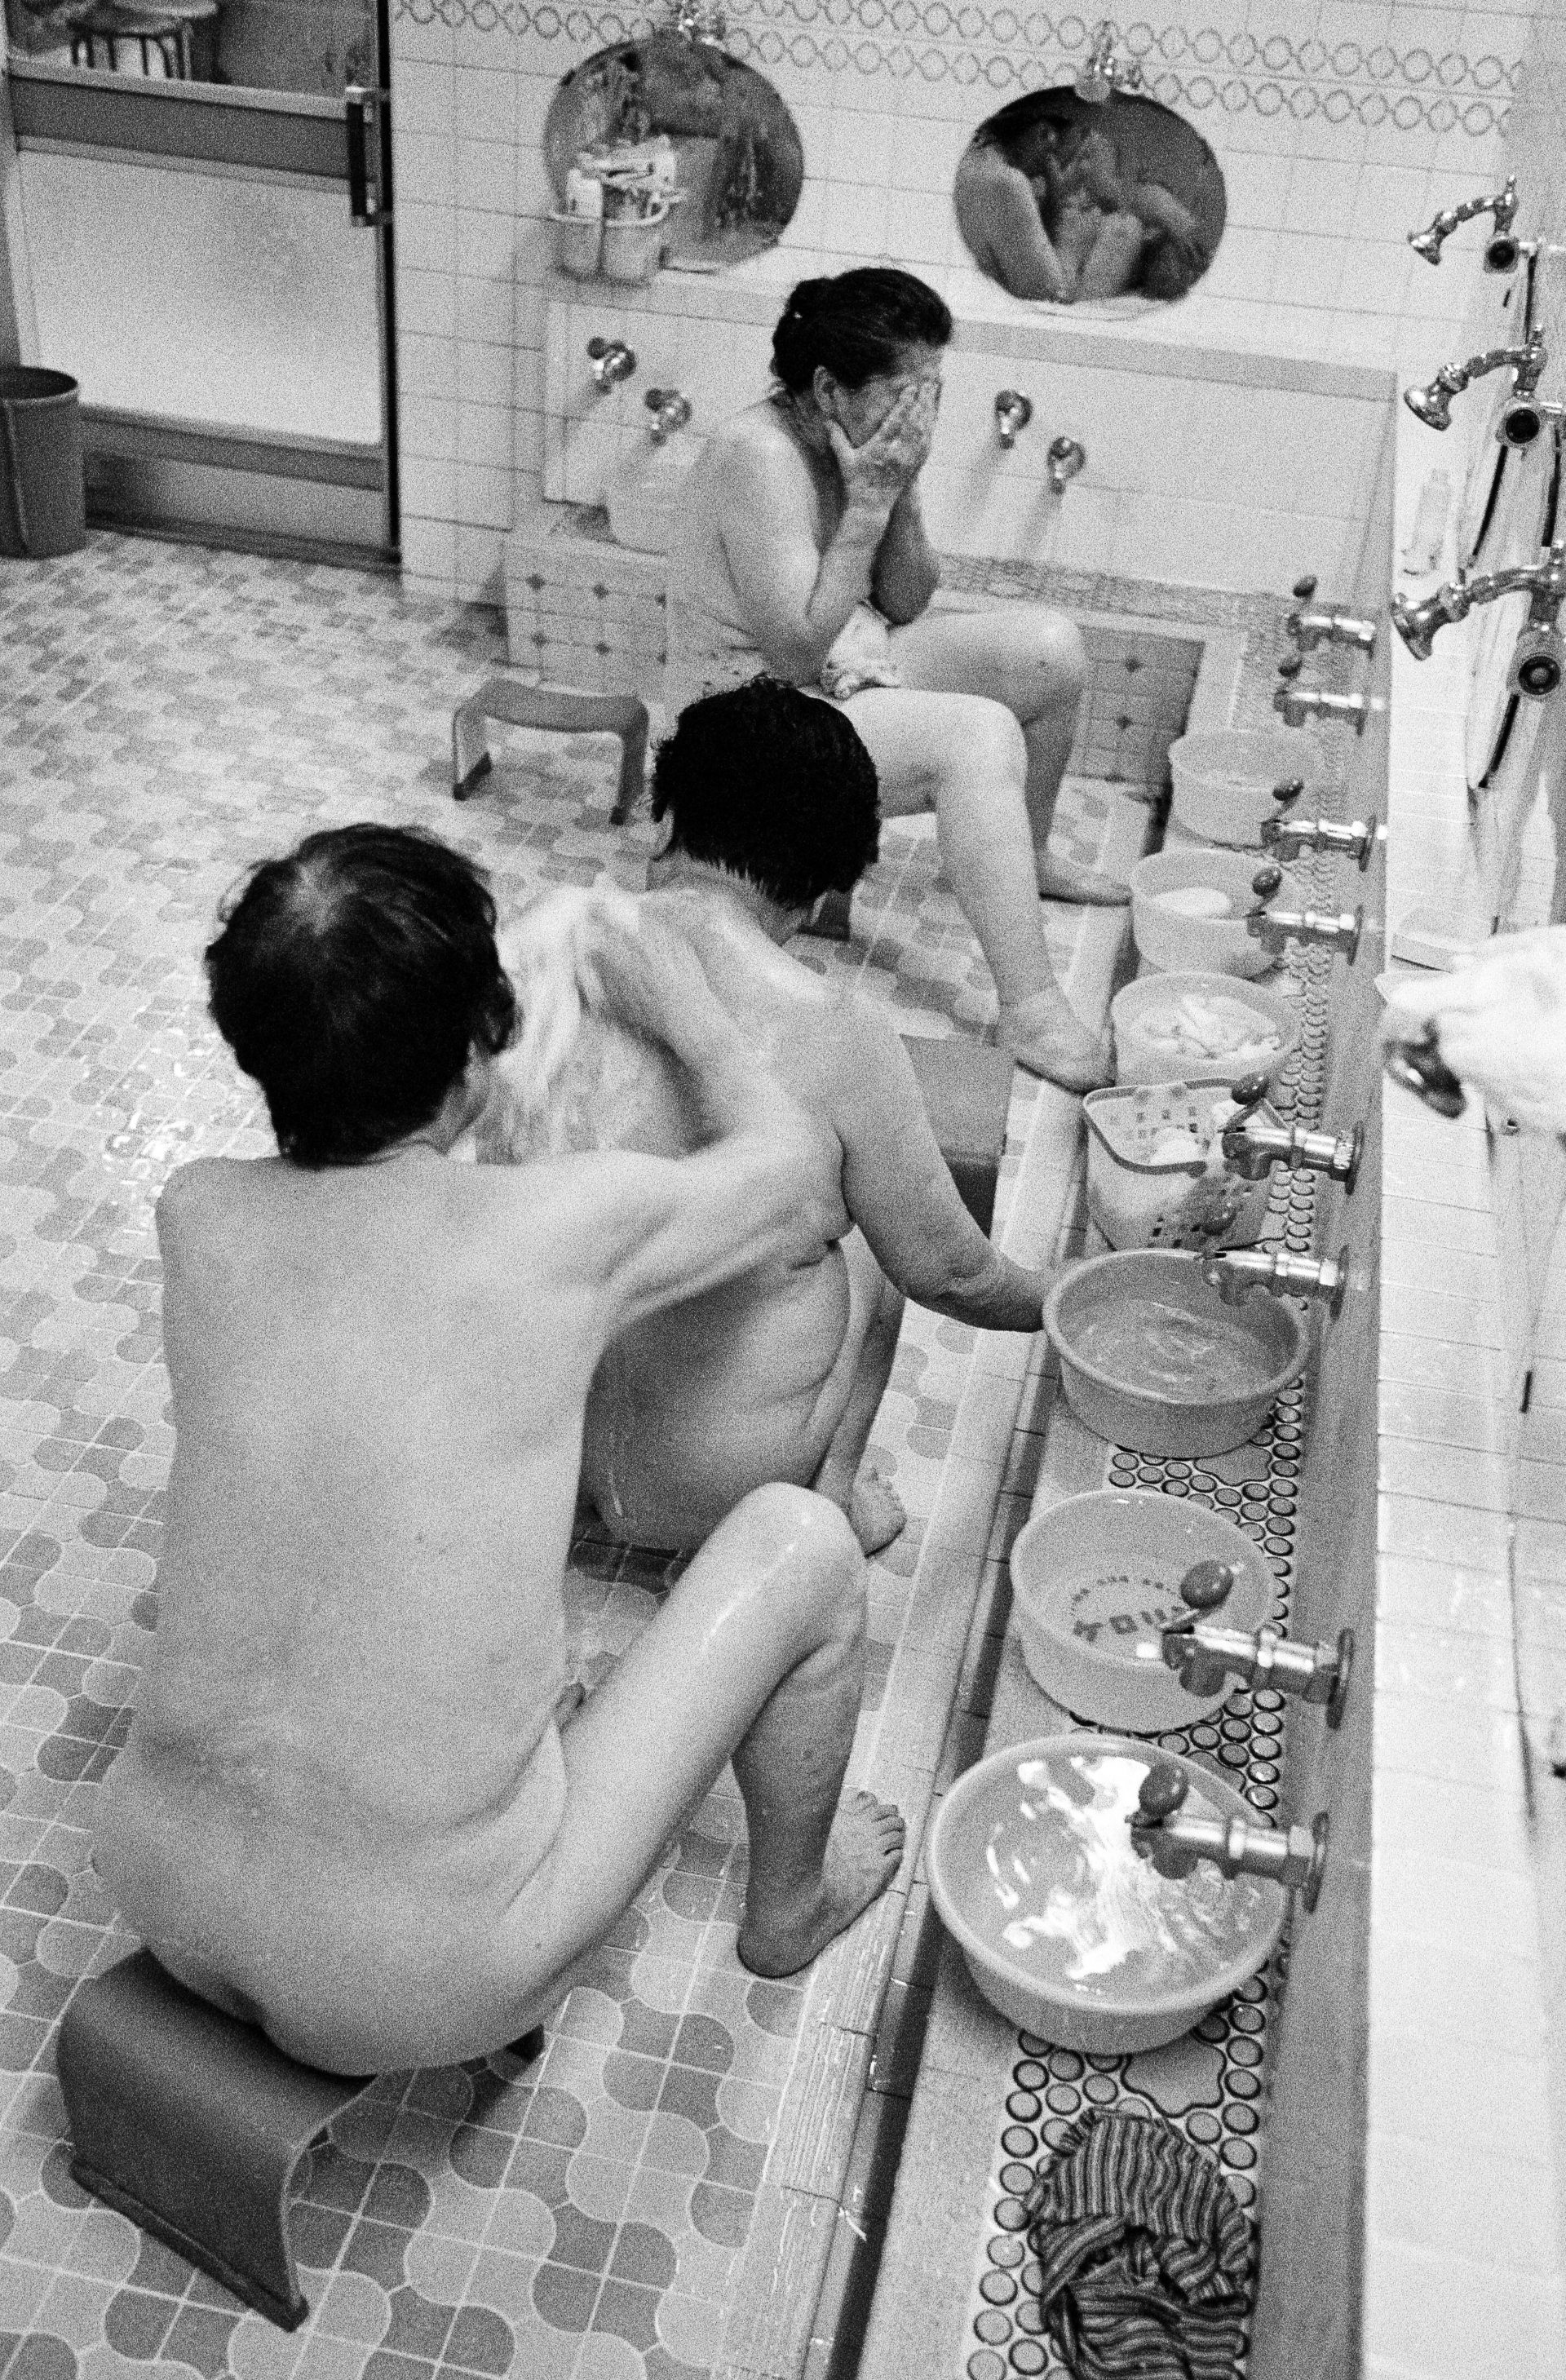  Sento, Frauen seifen sich gegenseitig den Ruecken ein in einem japanischen Badehaus, Japan, Waschhaus, Ort der alltaeglichen Reinigung, heisse Quellen, Heisse Becken,
06/2005 (Sento – The Japanese Bathhouse)